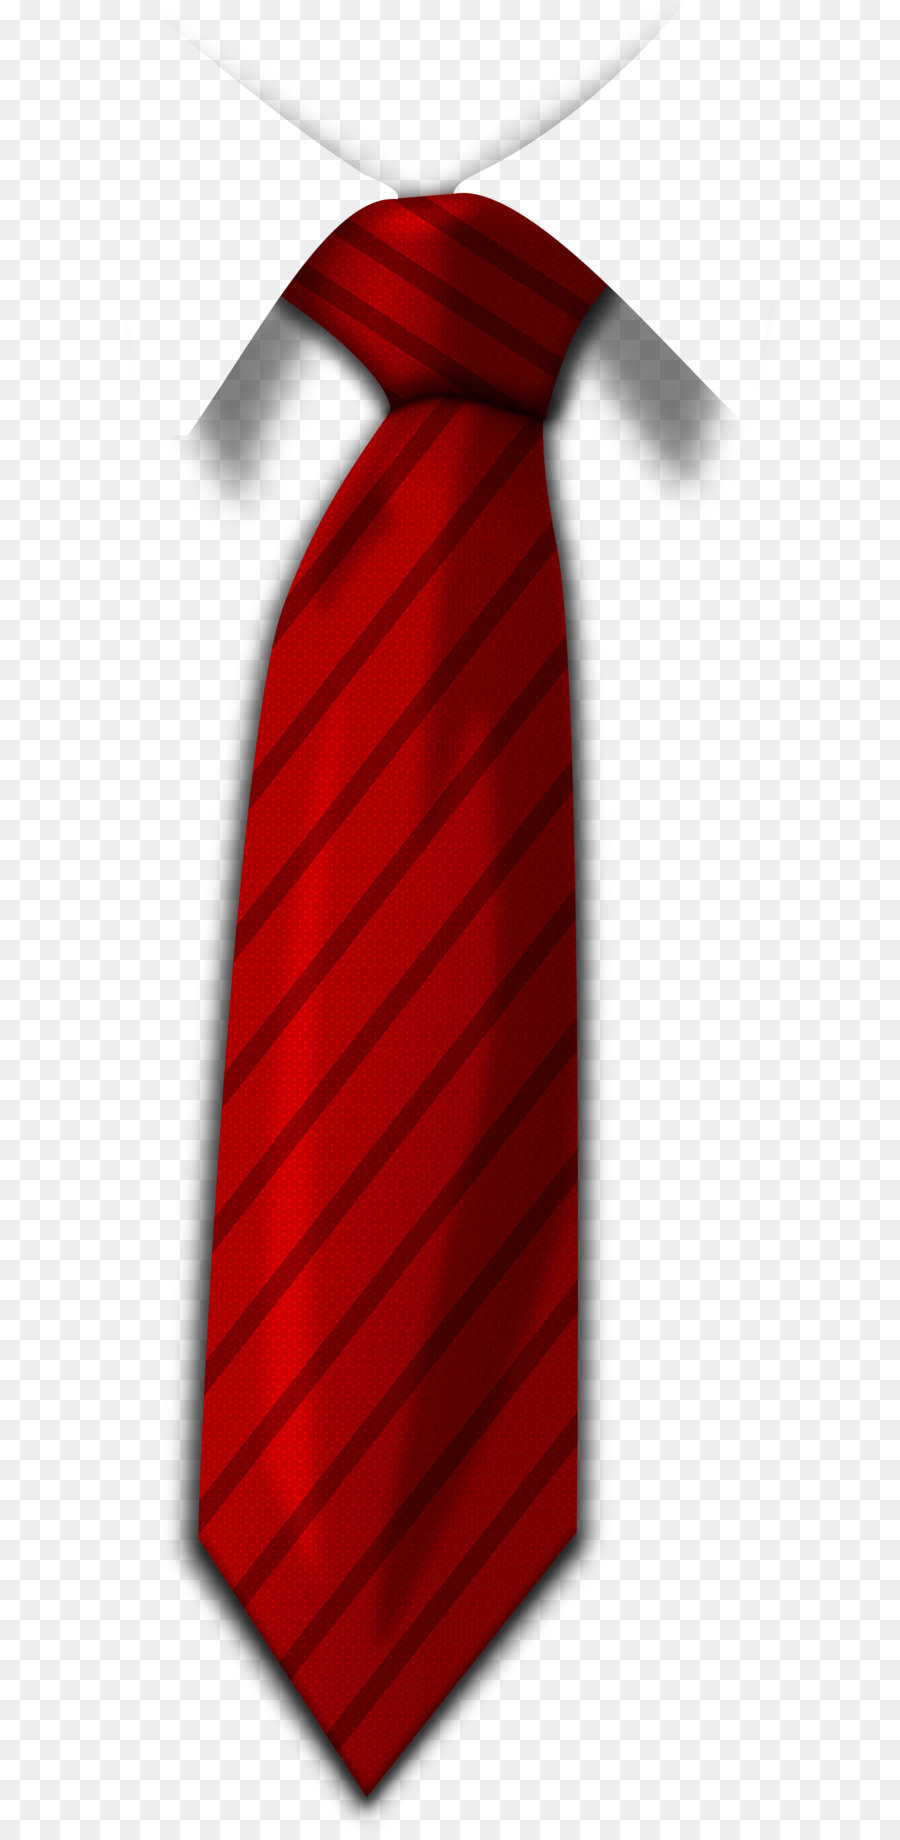 Necktie Bow tie - Red tie PNG image png download - 1241*3500 - Free Transparent Necktie png Download.